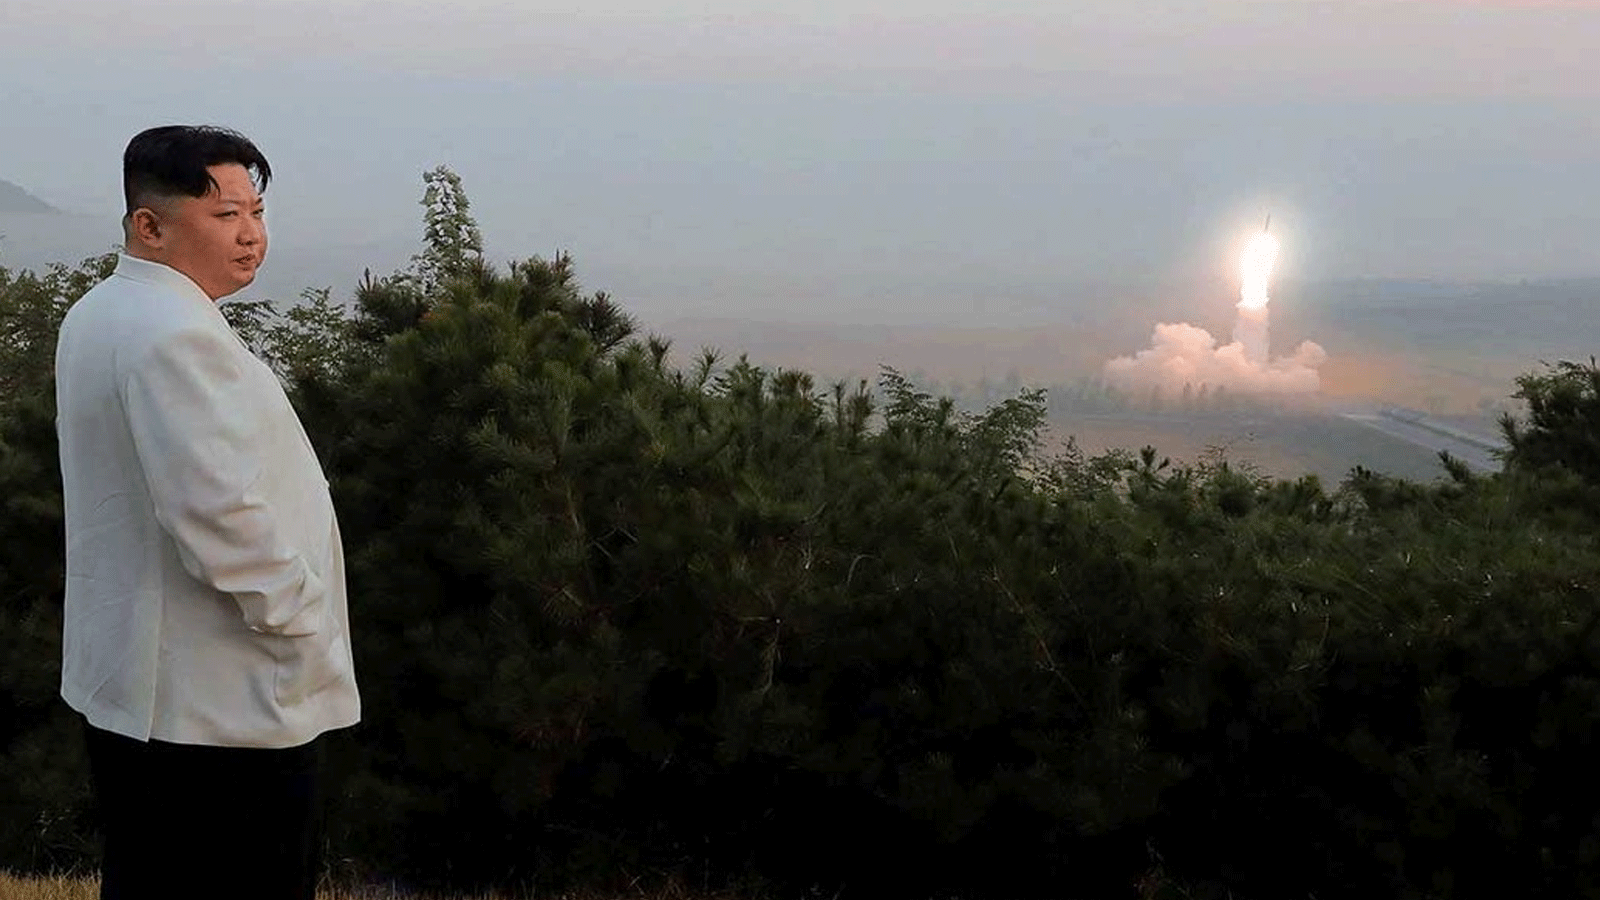 صورة غير مؤرخة نشرتها وكالة الأنباء الرسمية الكورية الشمالية في 10 تشرين الأول/أكتوبر 2022، للزعيم كيم جونغ أون وهو يراقب إطلاق صاروخ في مكان غير محدد